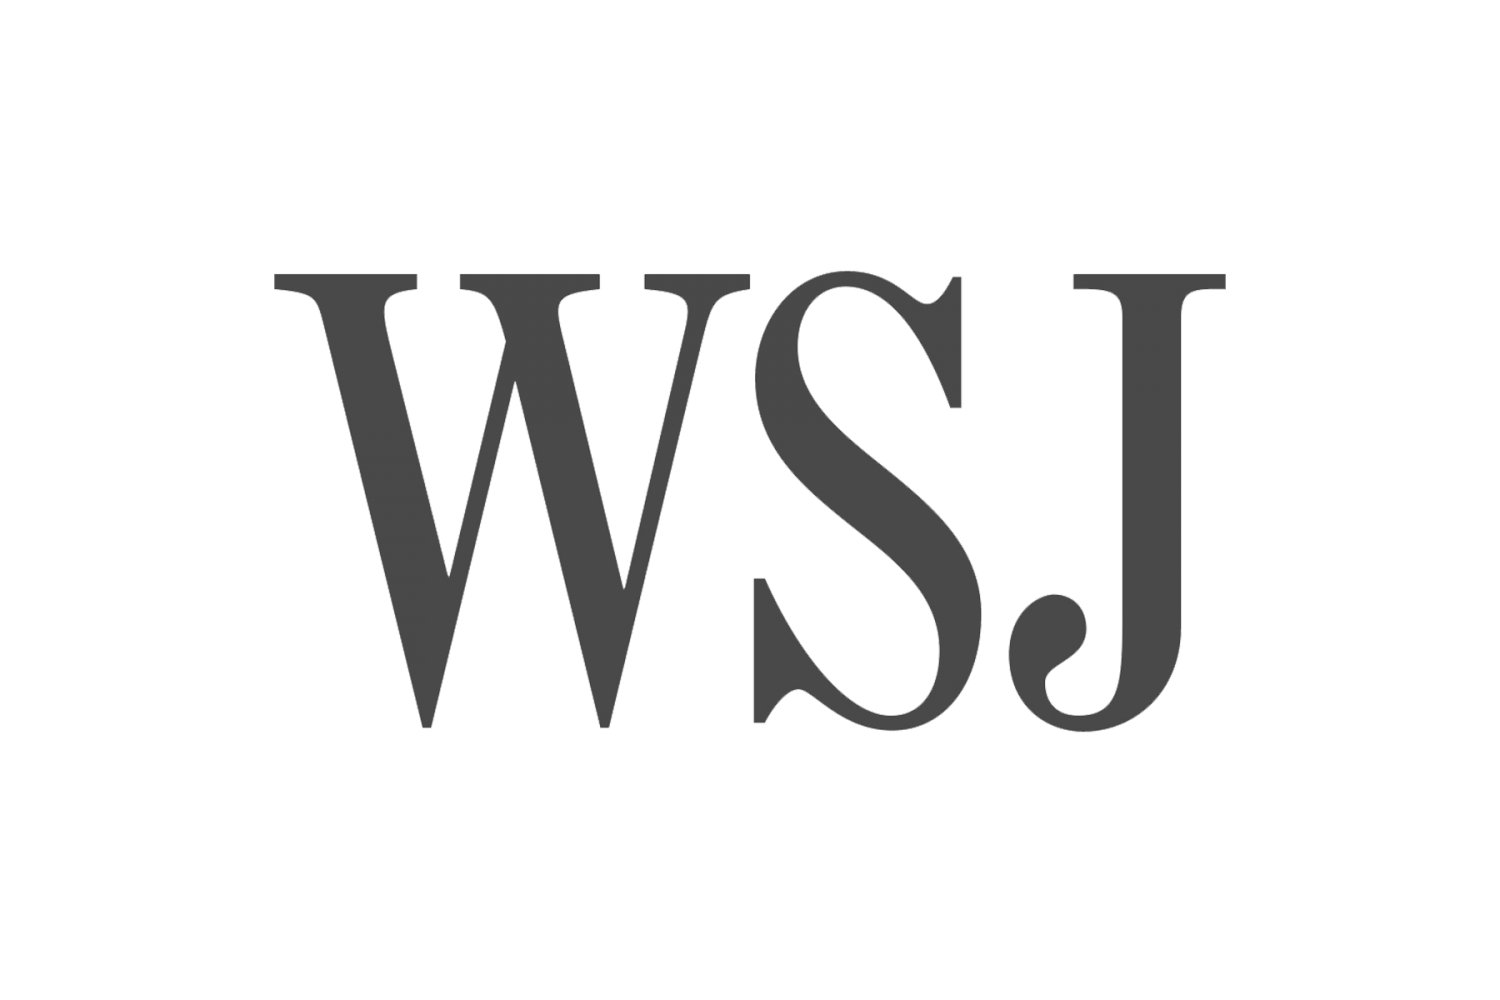 The-Wall-Street-Journal-emblem.png